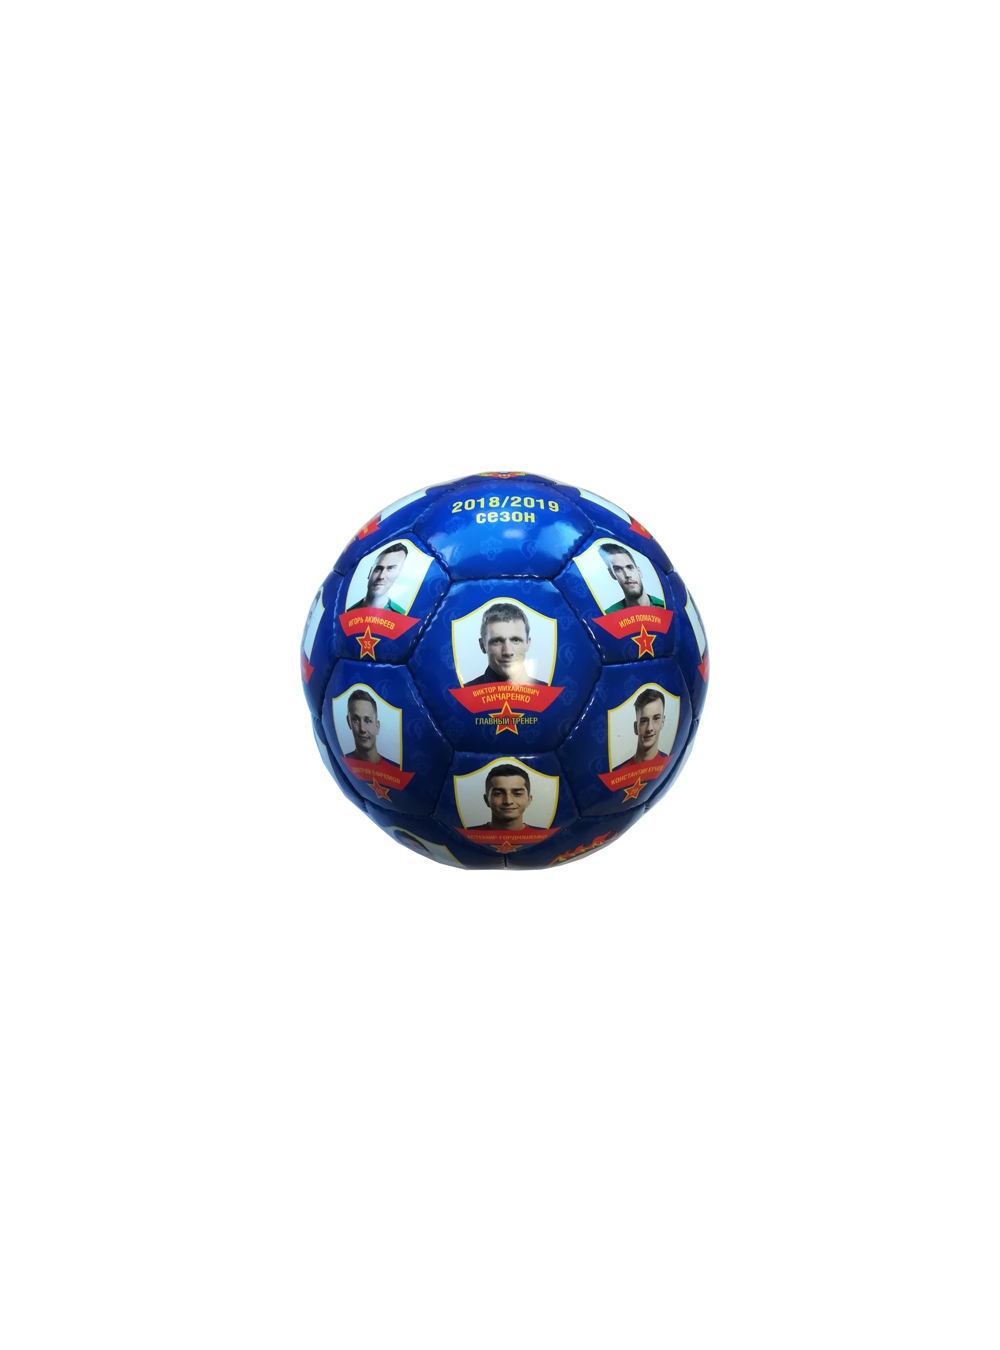 Мяч сувенирный "Команда 2018/2019", D-11 см от Cskashop